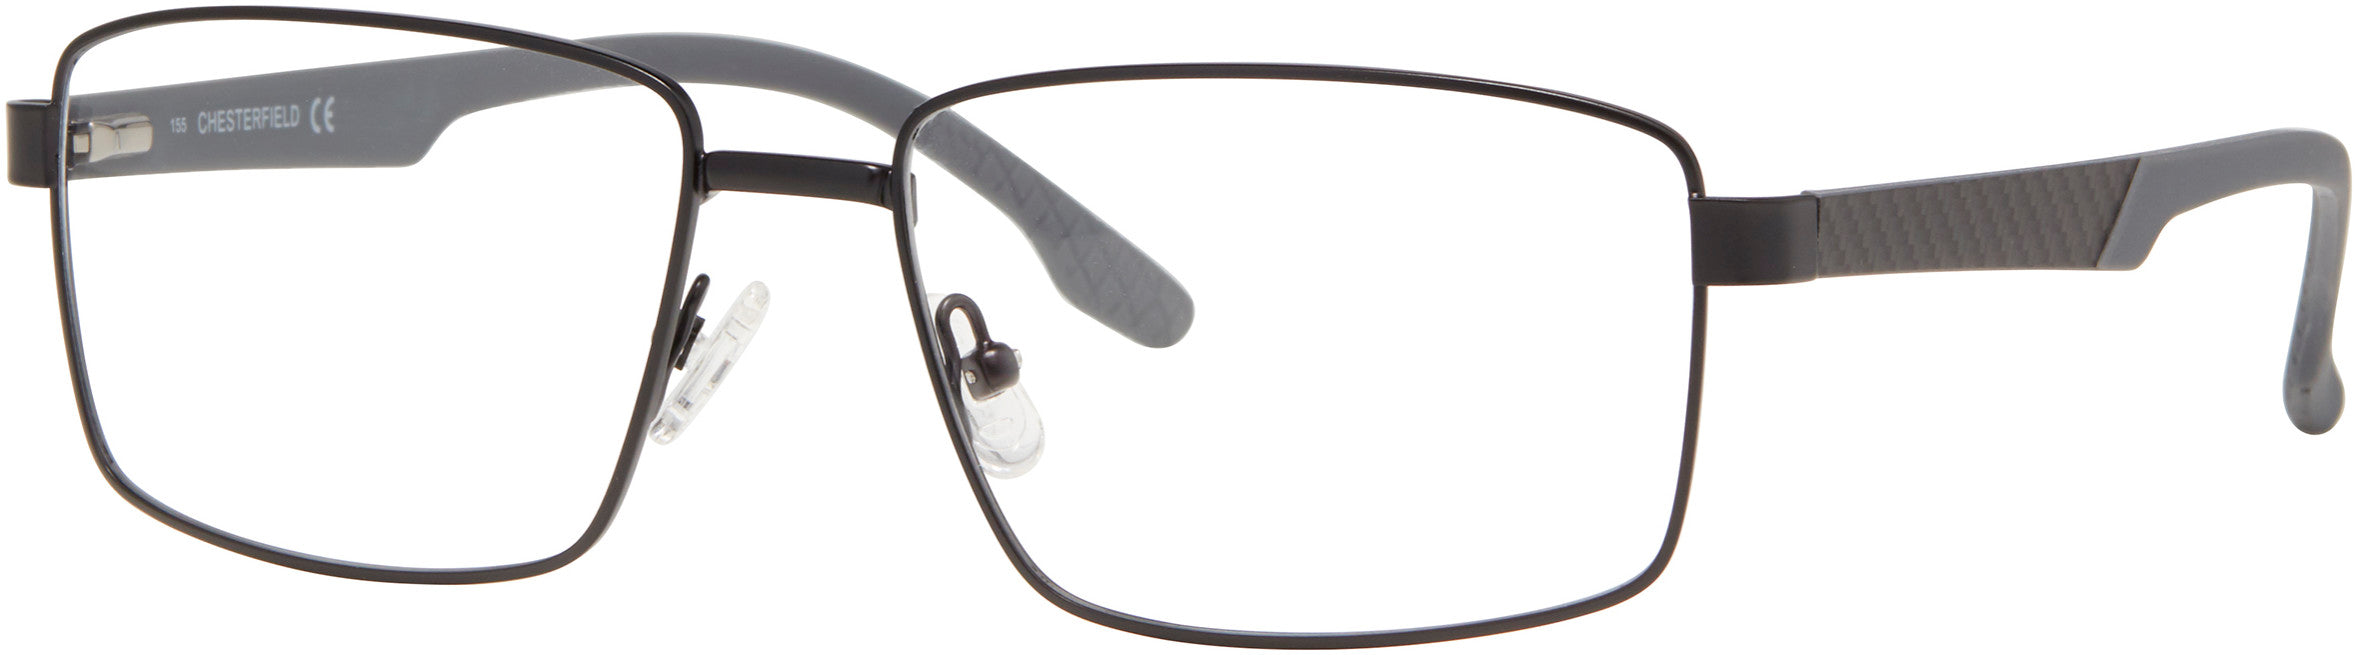  Chesterfield 83XL Rectangular Eyeglasses 0003-0003  Matte Black (00 Demo Lens)